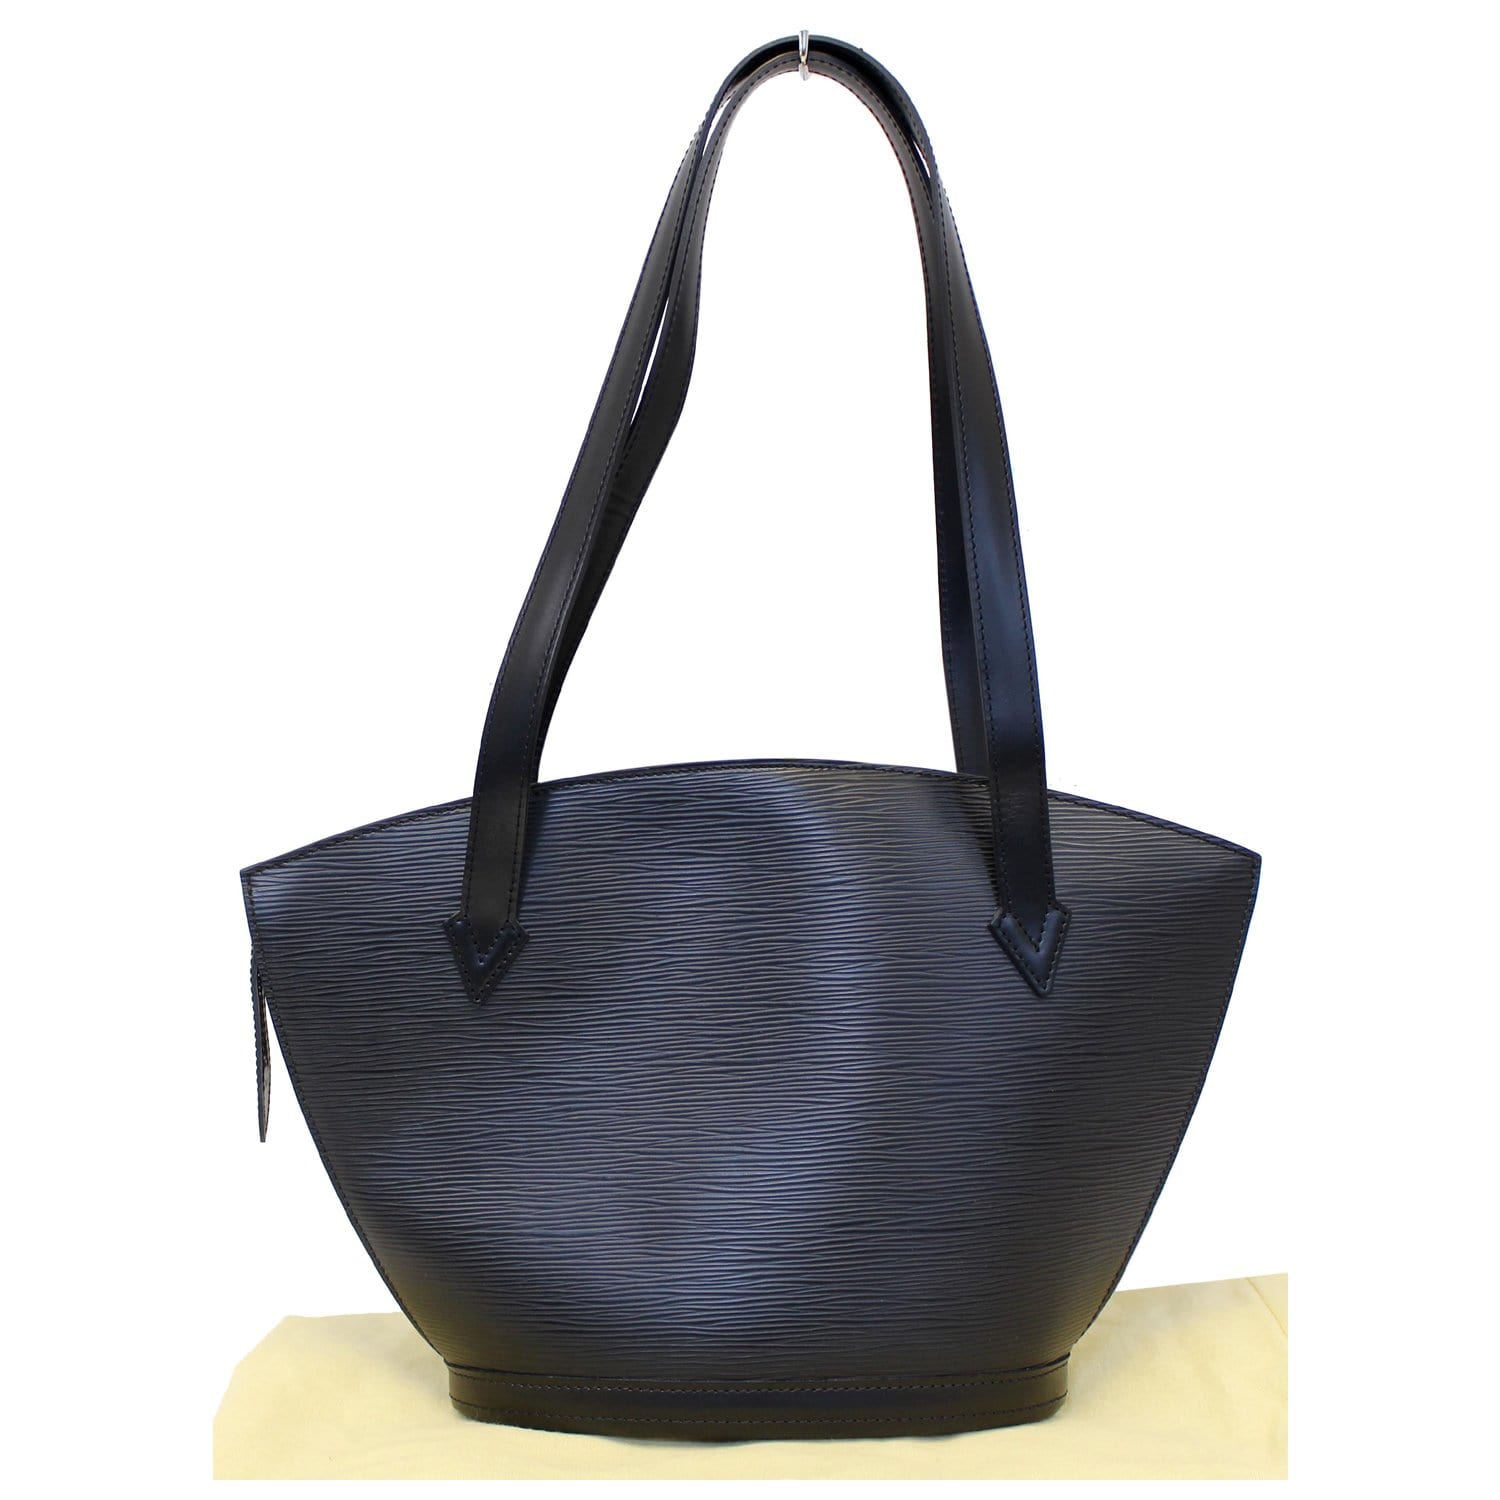 Louis Vuitton Saint Jacques Epi Leather PM Tote Bag in Black